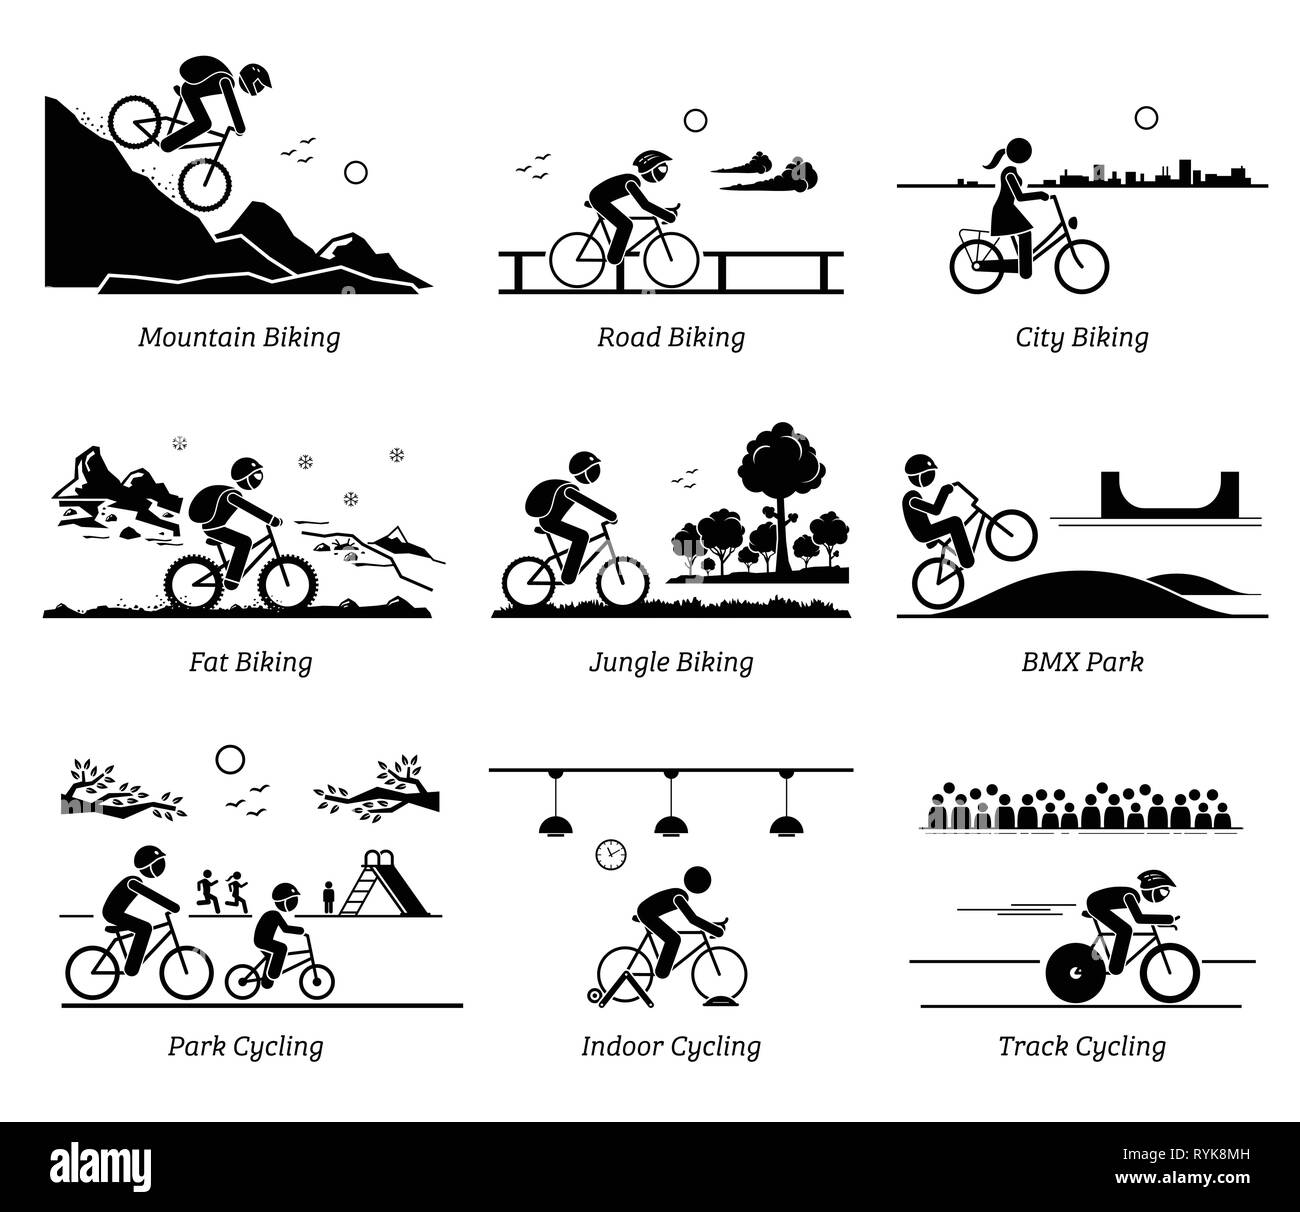 Radfahrer Radfahren und Reiten Fahrrad in verschiedenen Orten. Piktogramme zeigen Bike am Berg, Straße, Stadt, Eis, Dschungel, BMX, Park, Hallenbad und verfolgen. Stock Vektor